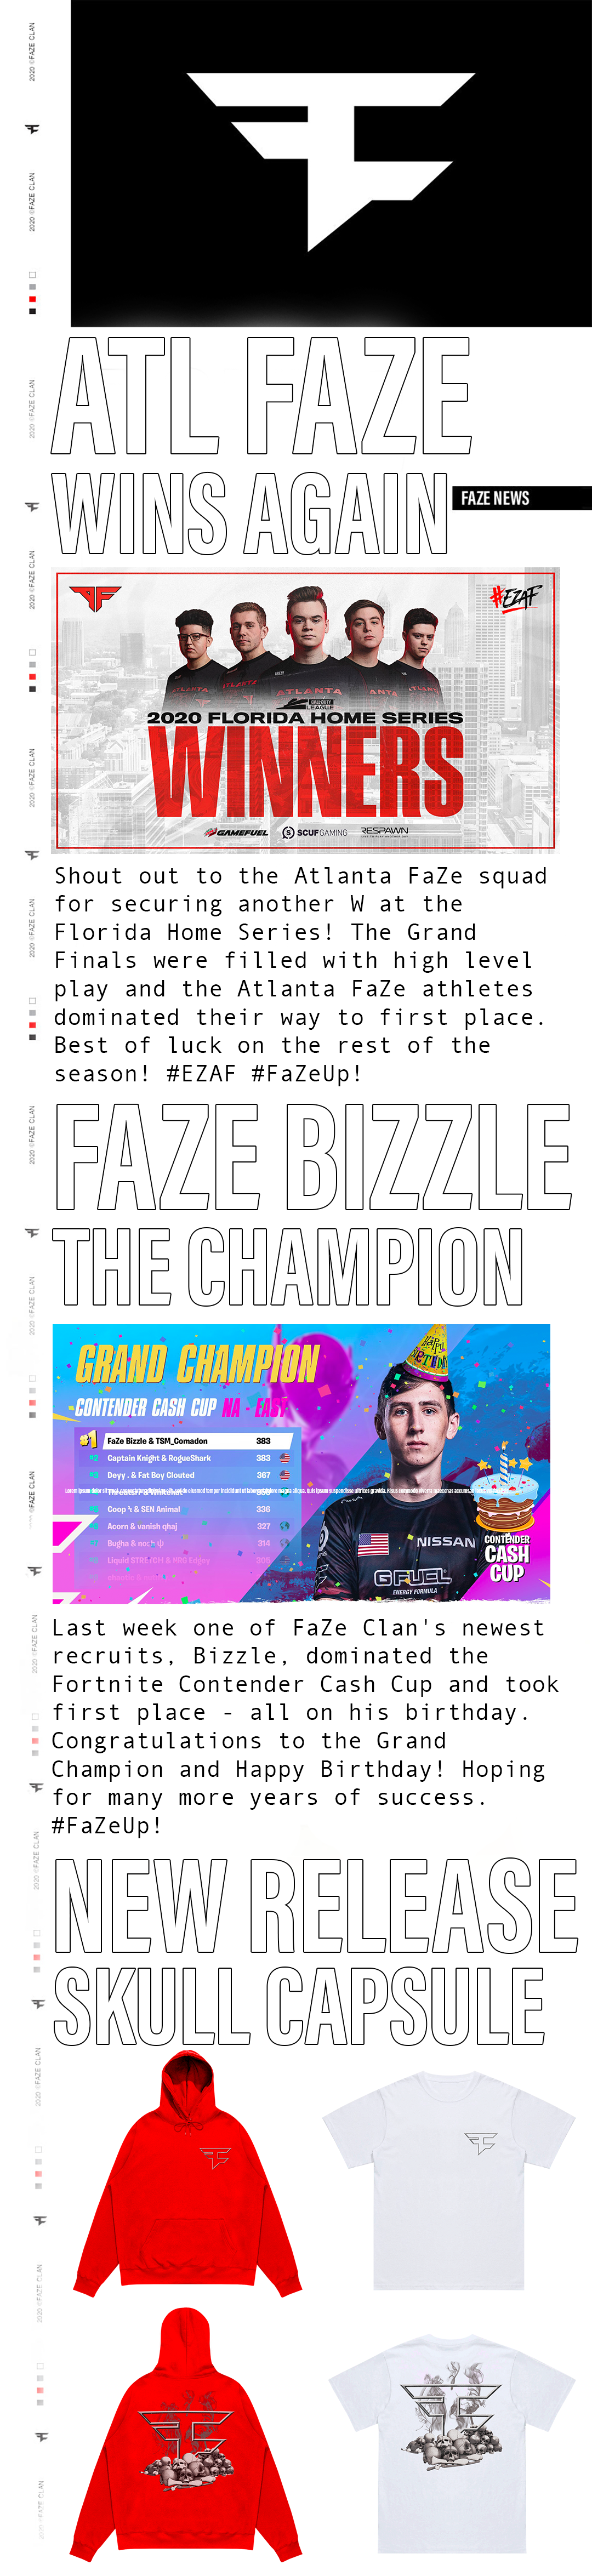 FaZe Clan Newsletter